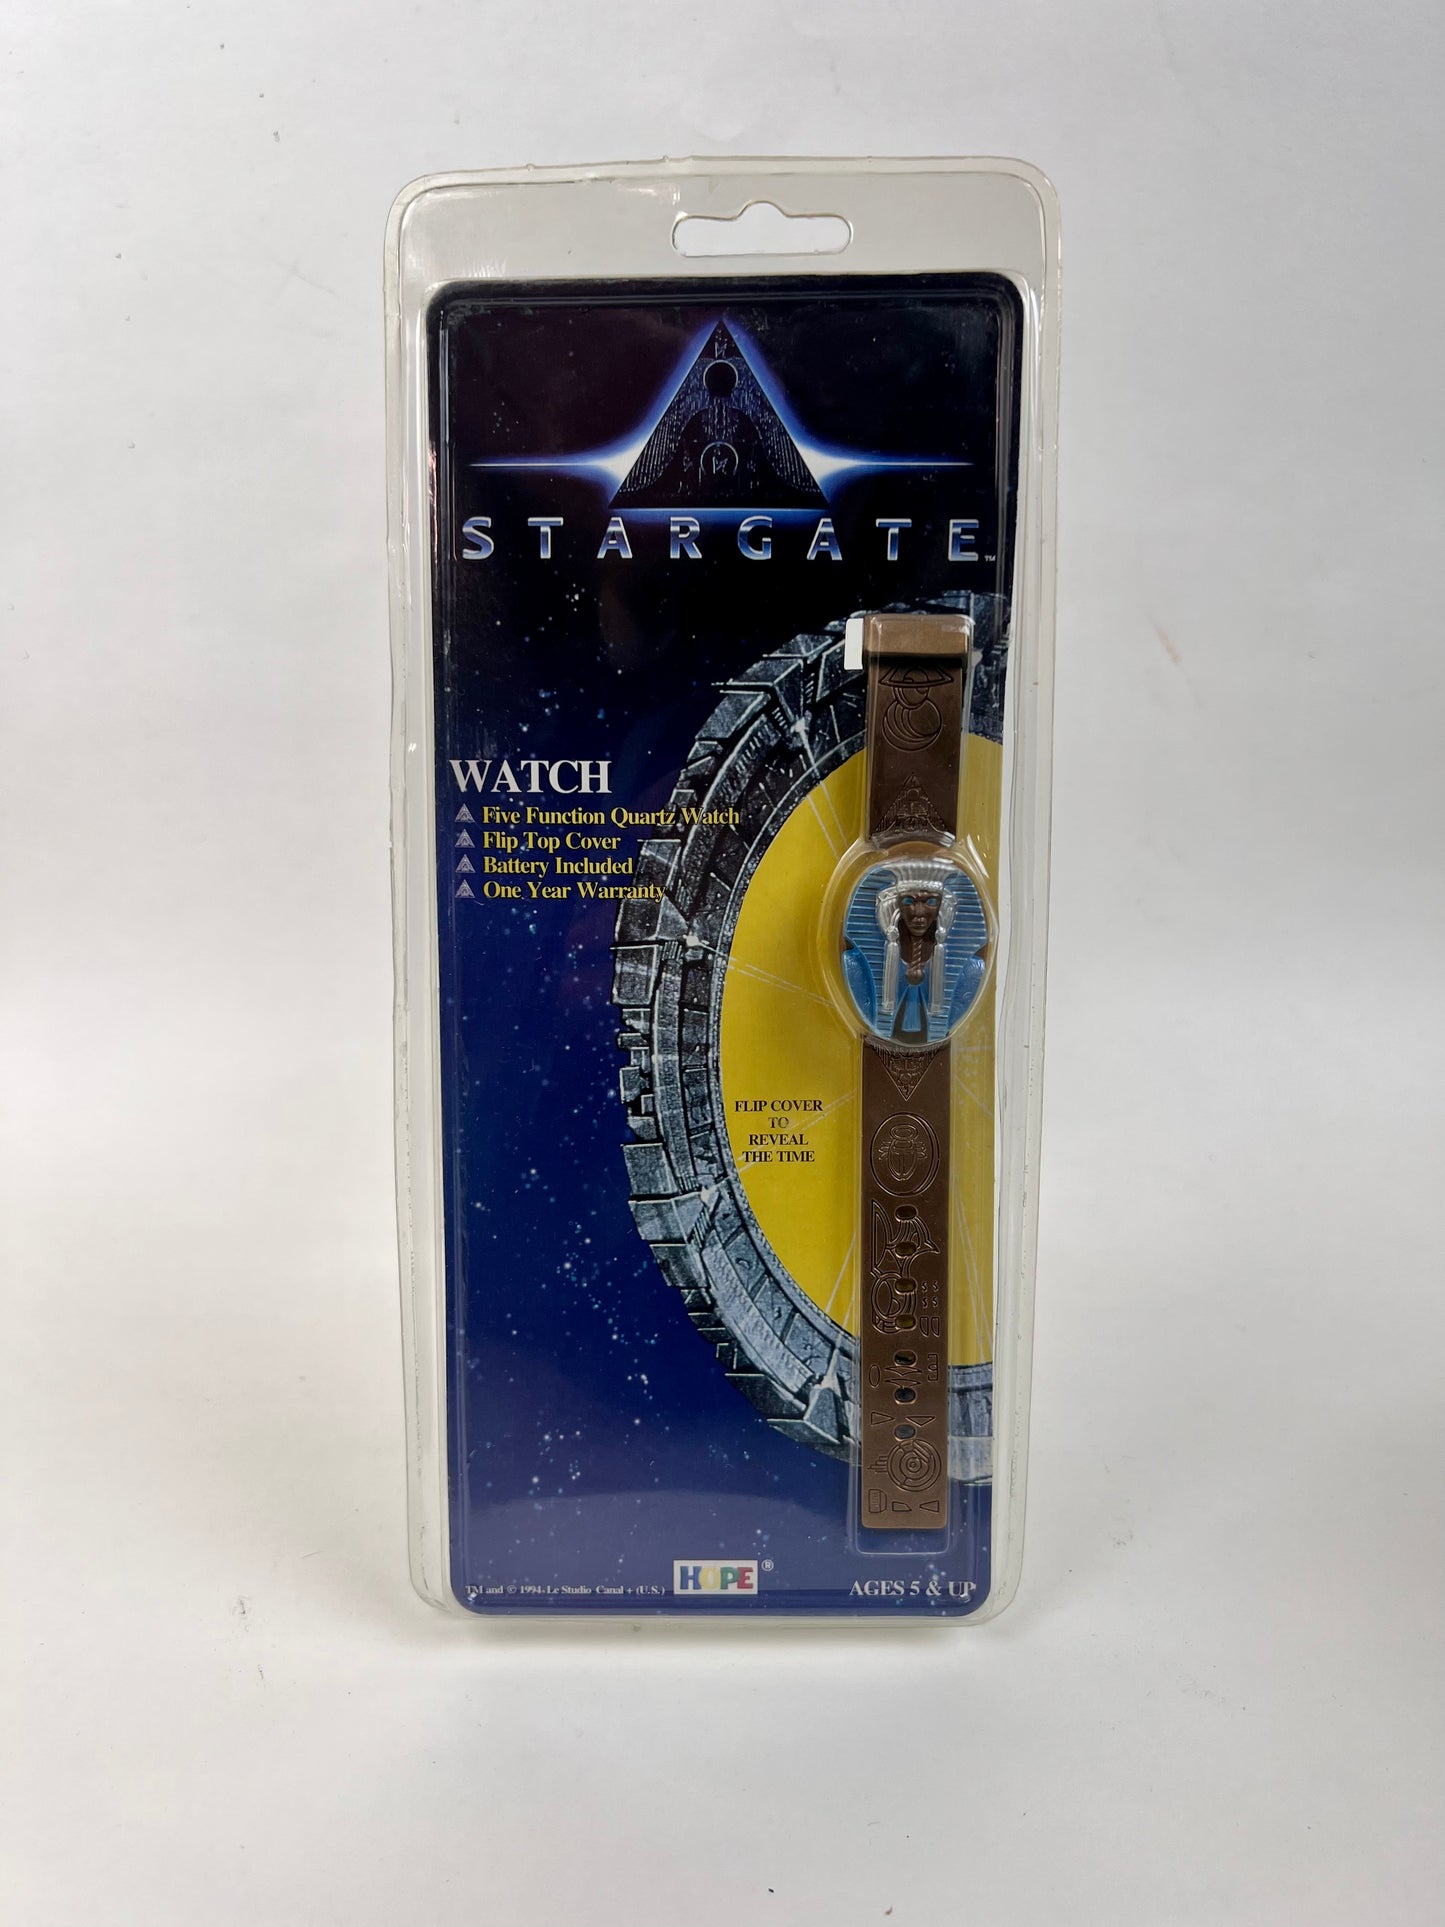 Stargate - Flip Cover 5 Function Quartz Watch - 1994